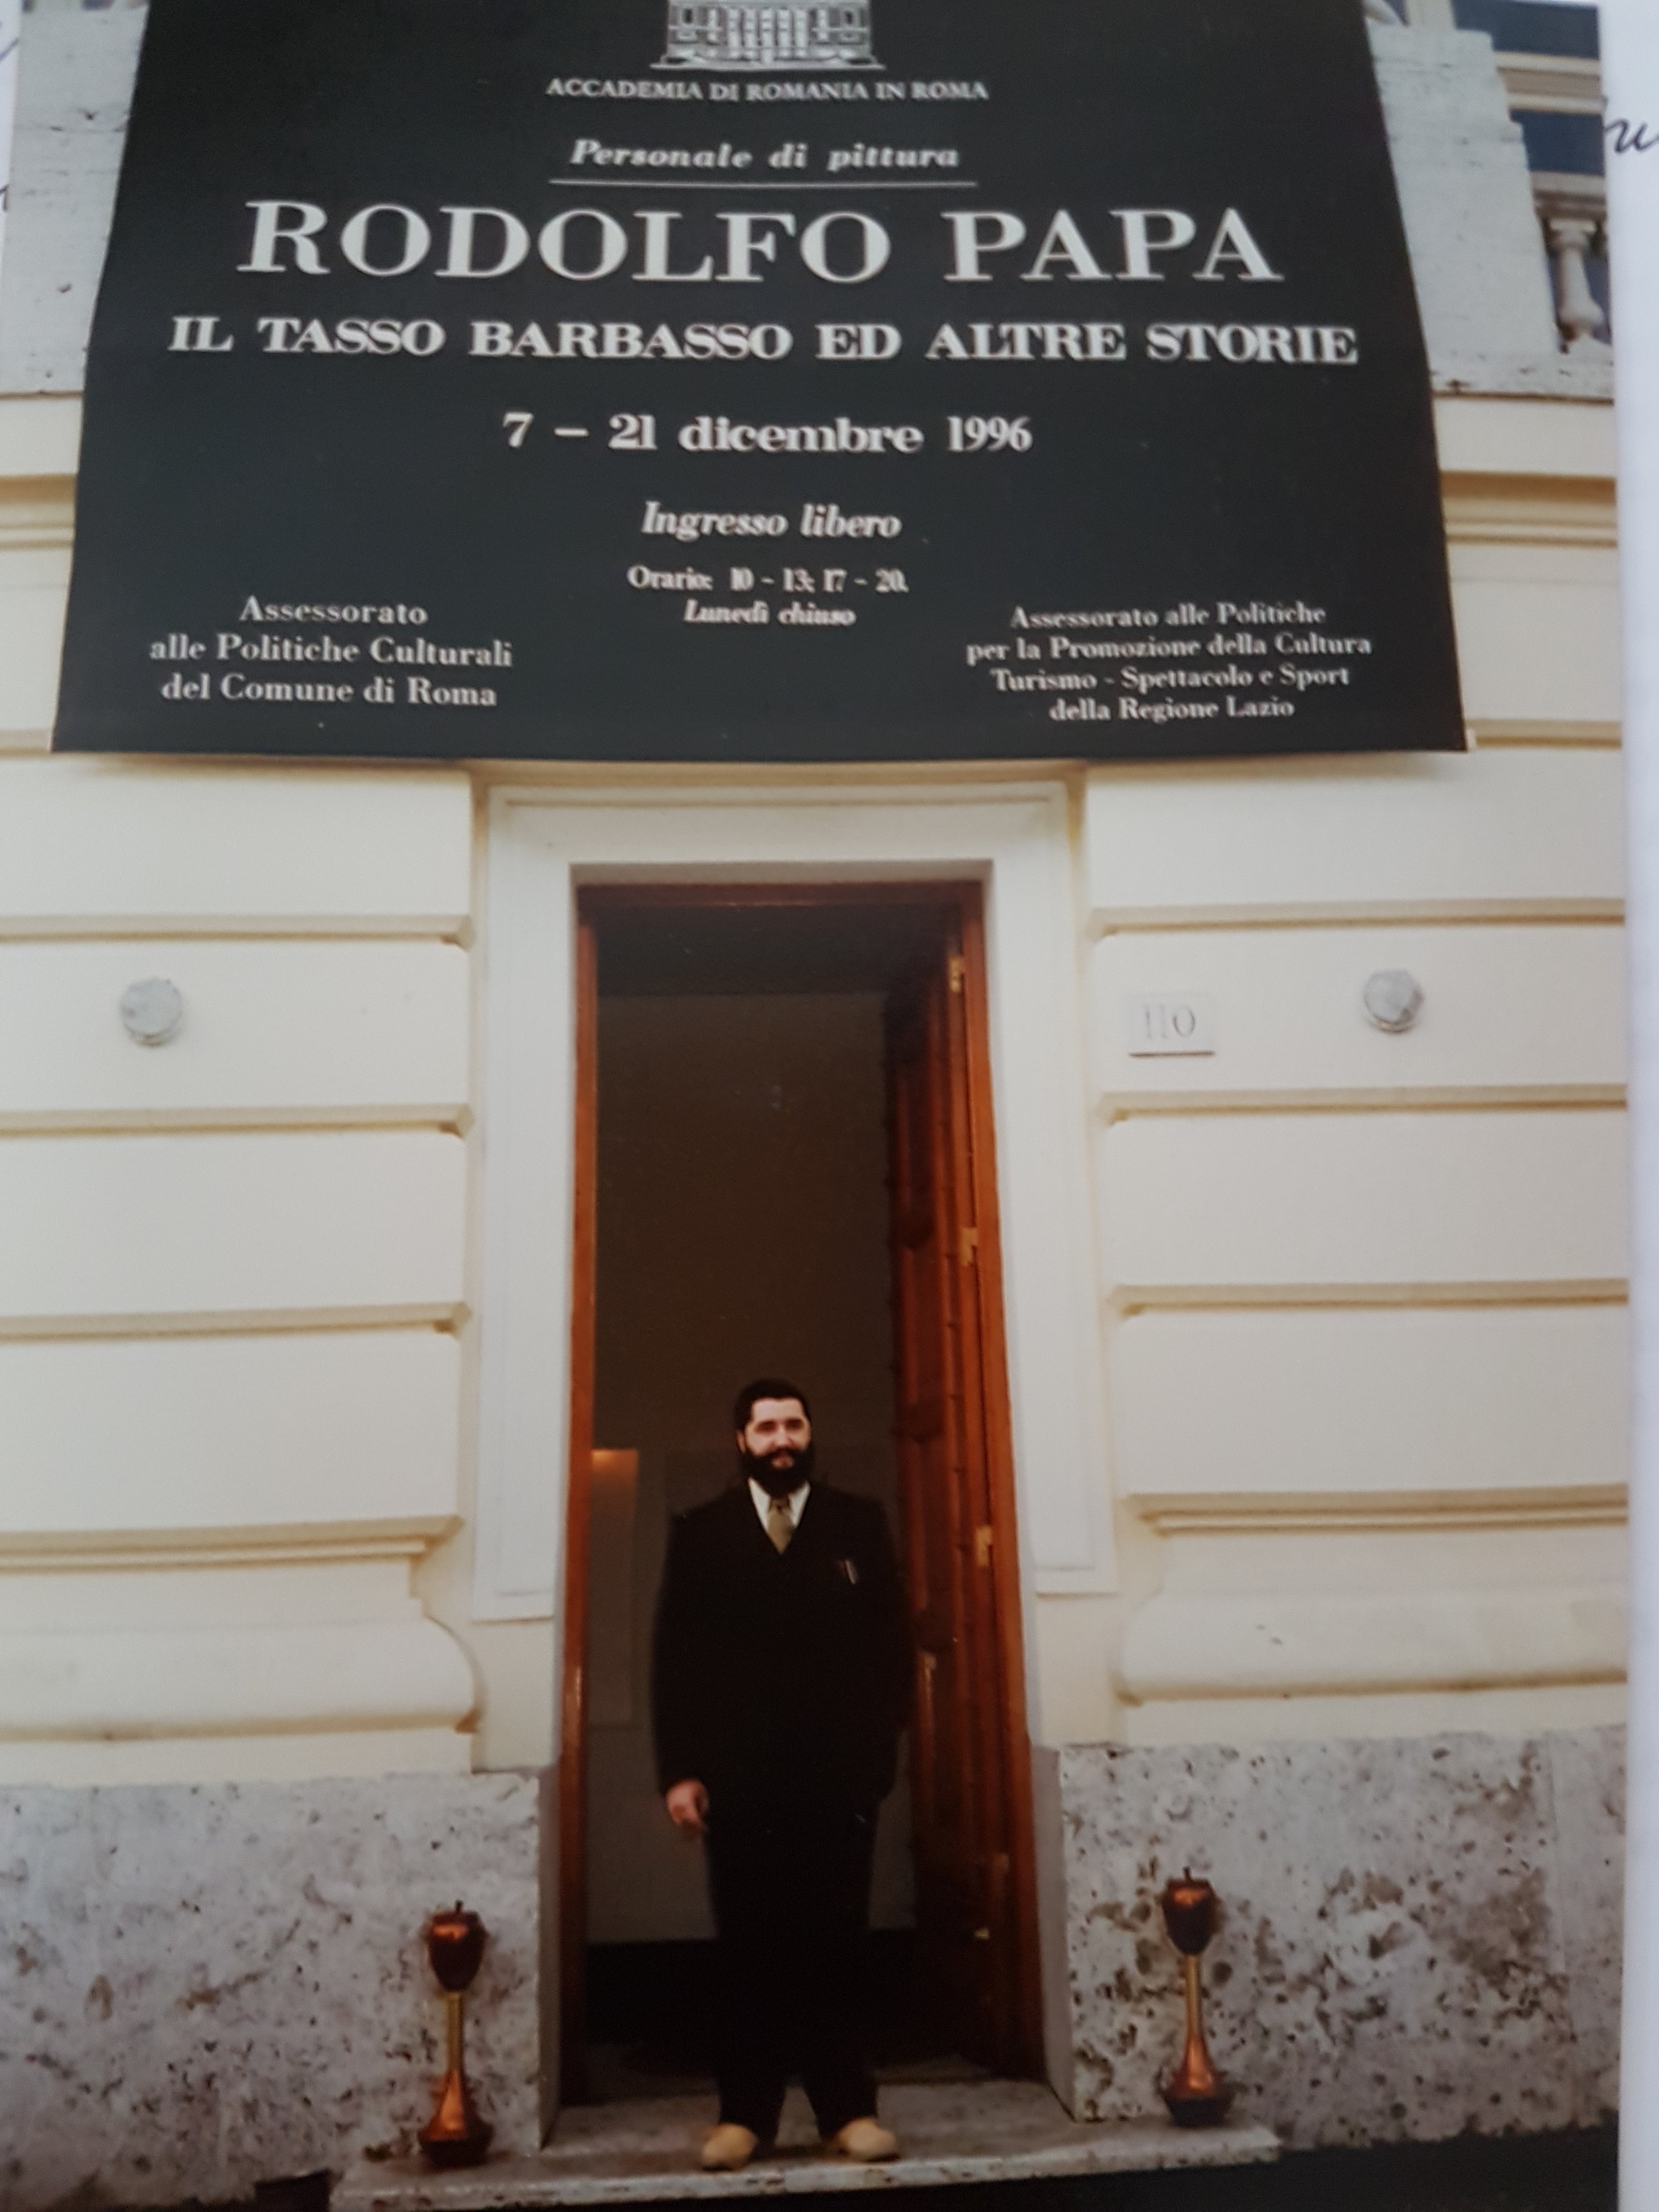 Accademia di Romania 1996 -Personale